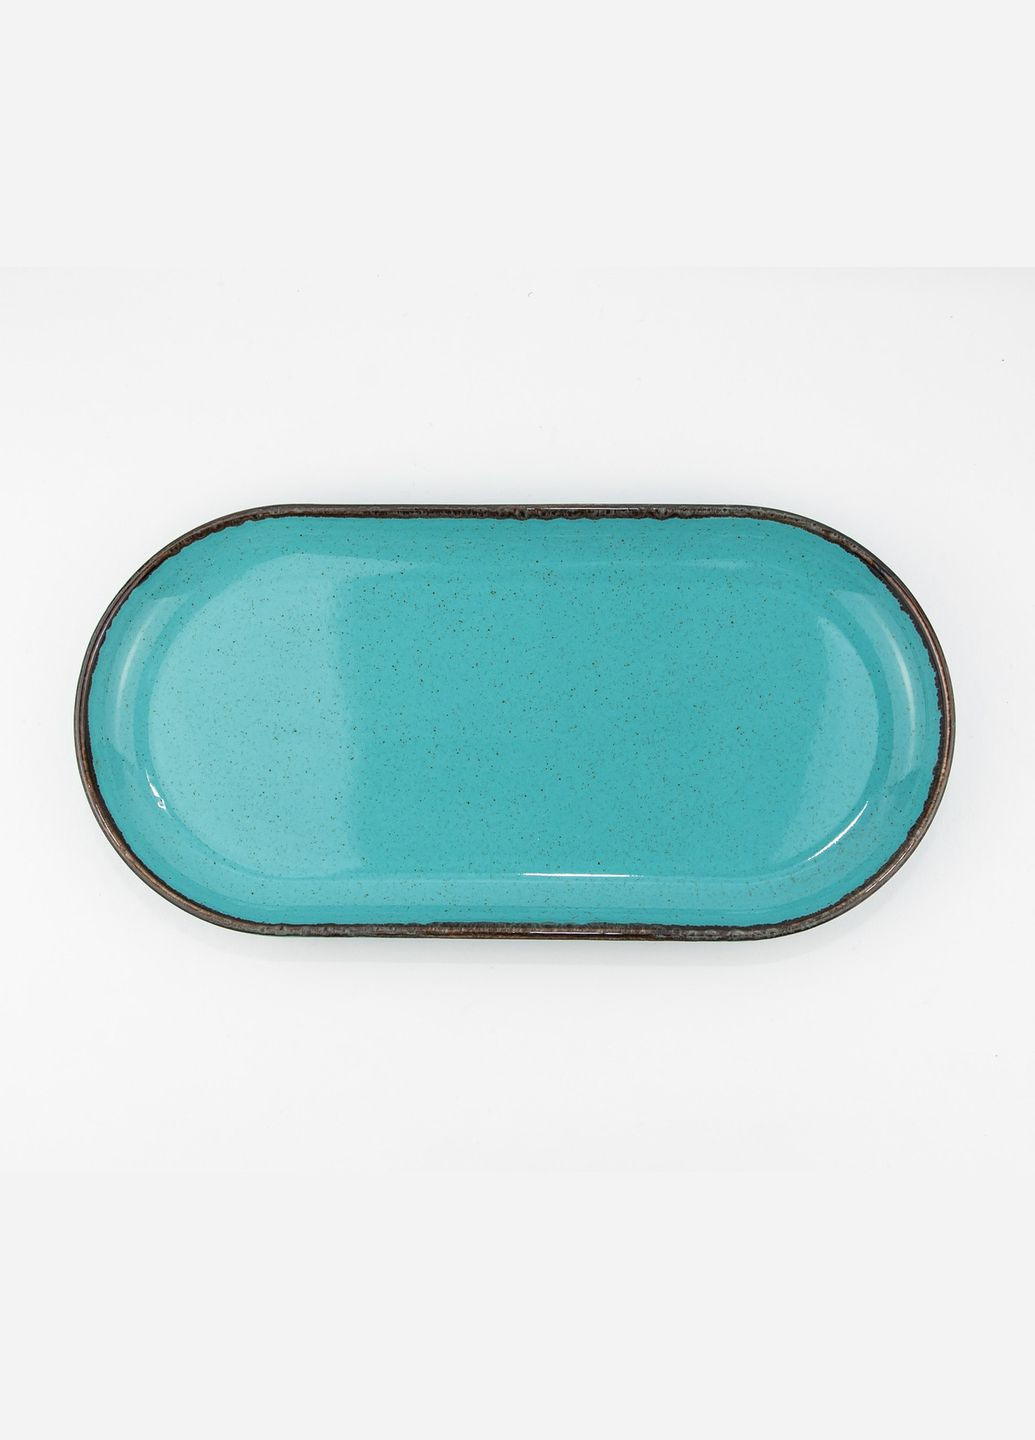 Тарелка овальной формы Seasons Turquoise 118130 30см Овальное блюдо из фарфора Элитная посуда Porland (277949243)